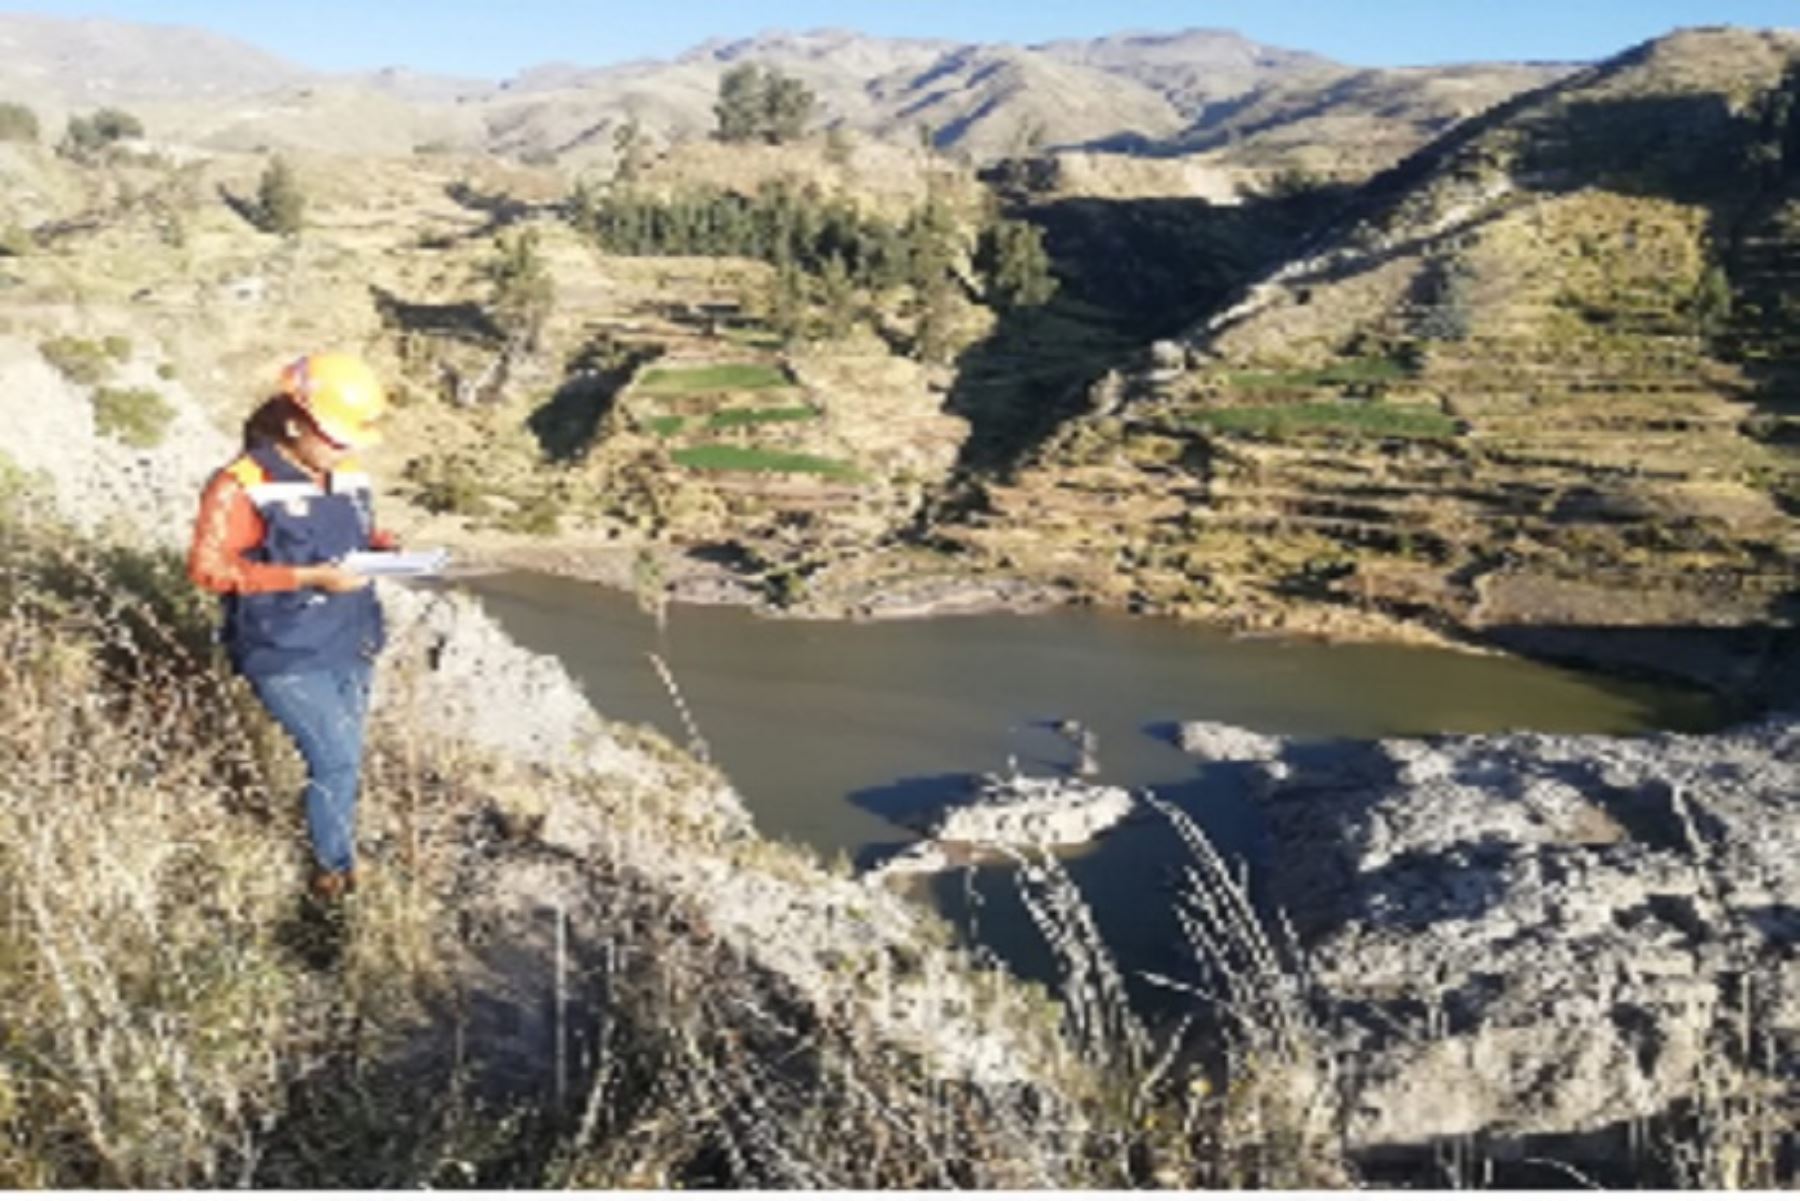 Avanzan los trabajos de remoción de escombros del cauce del río Colca (Arequipa), afectado por un deslizamiento de tierra. Foto: ANDINA/Difusión